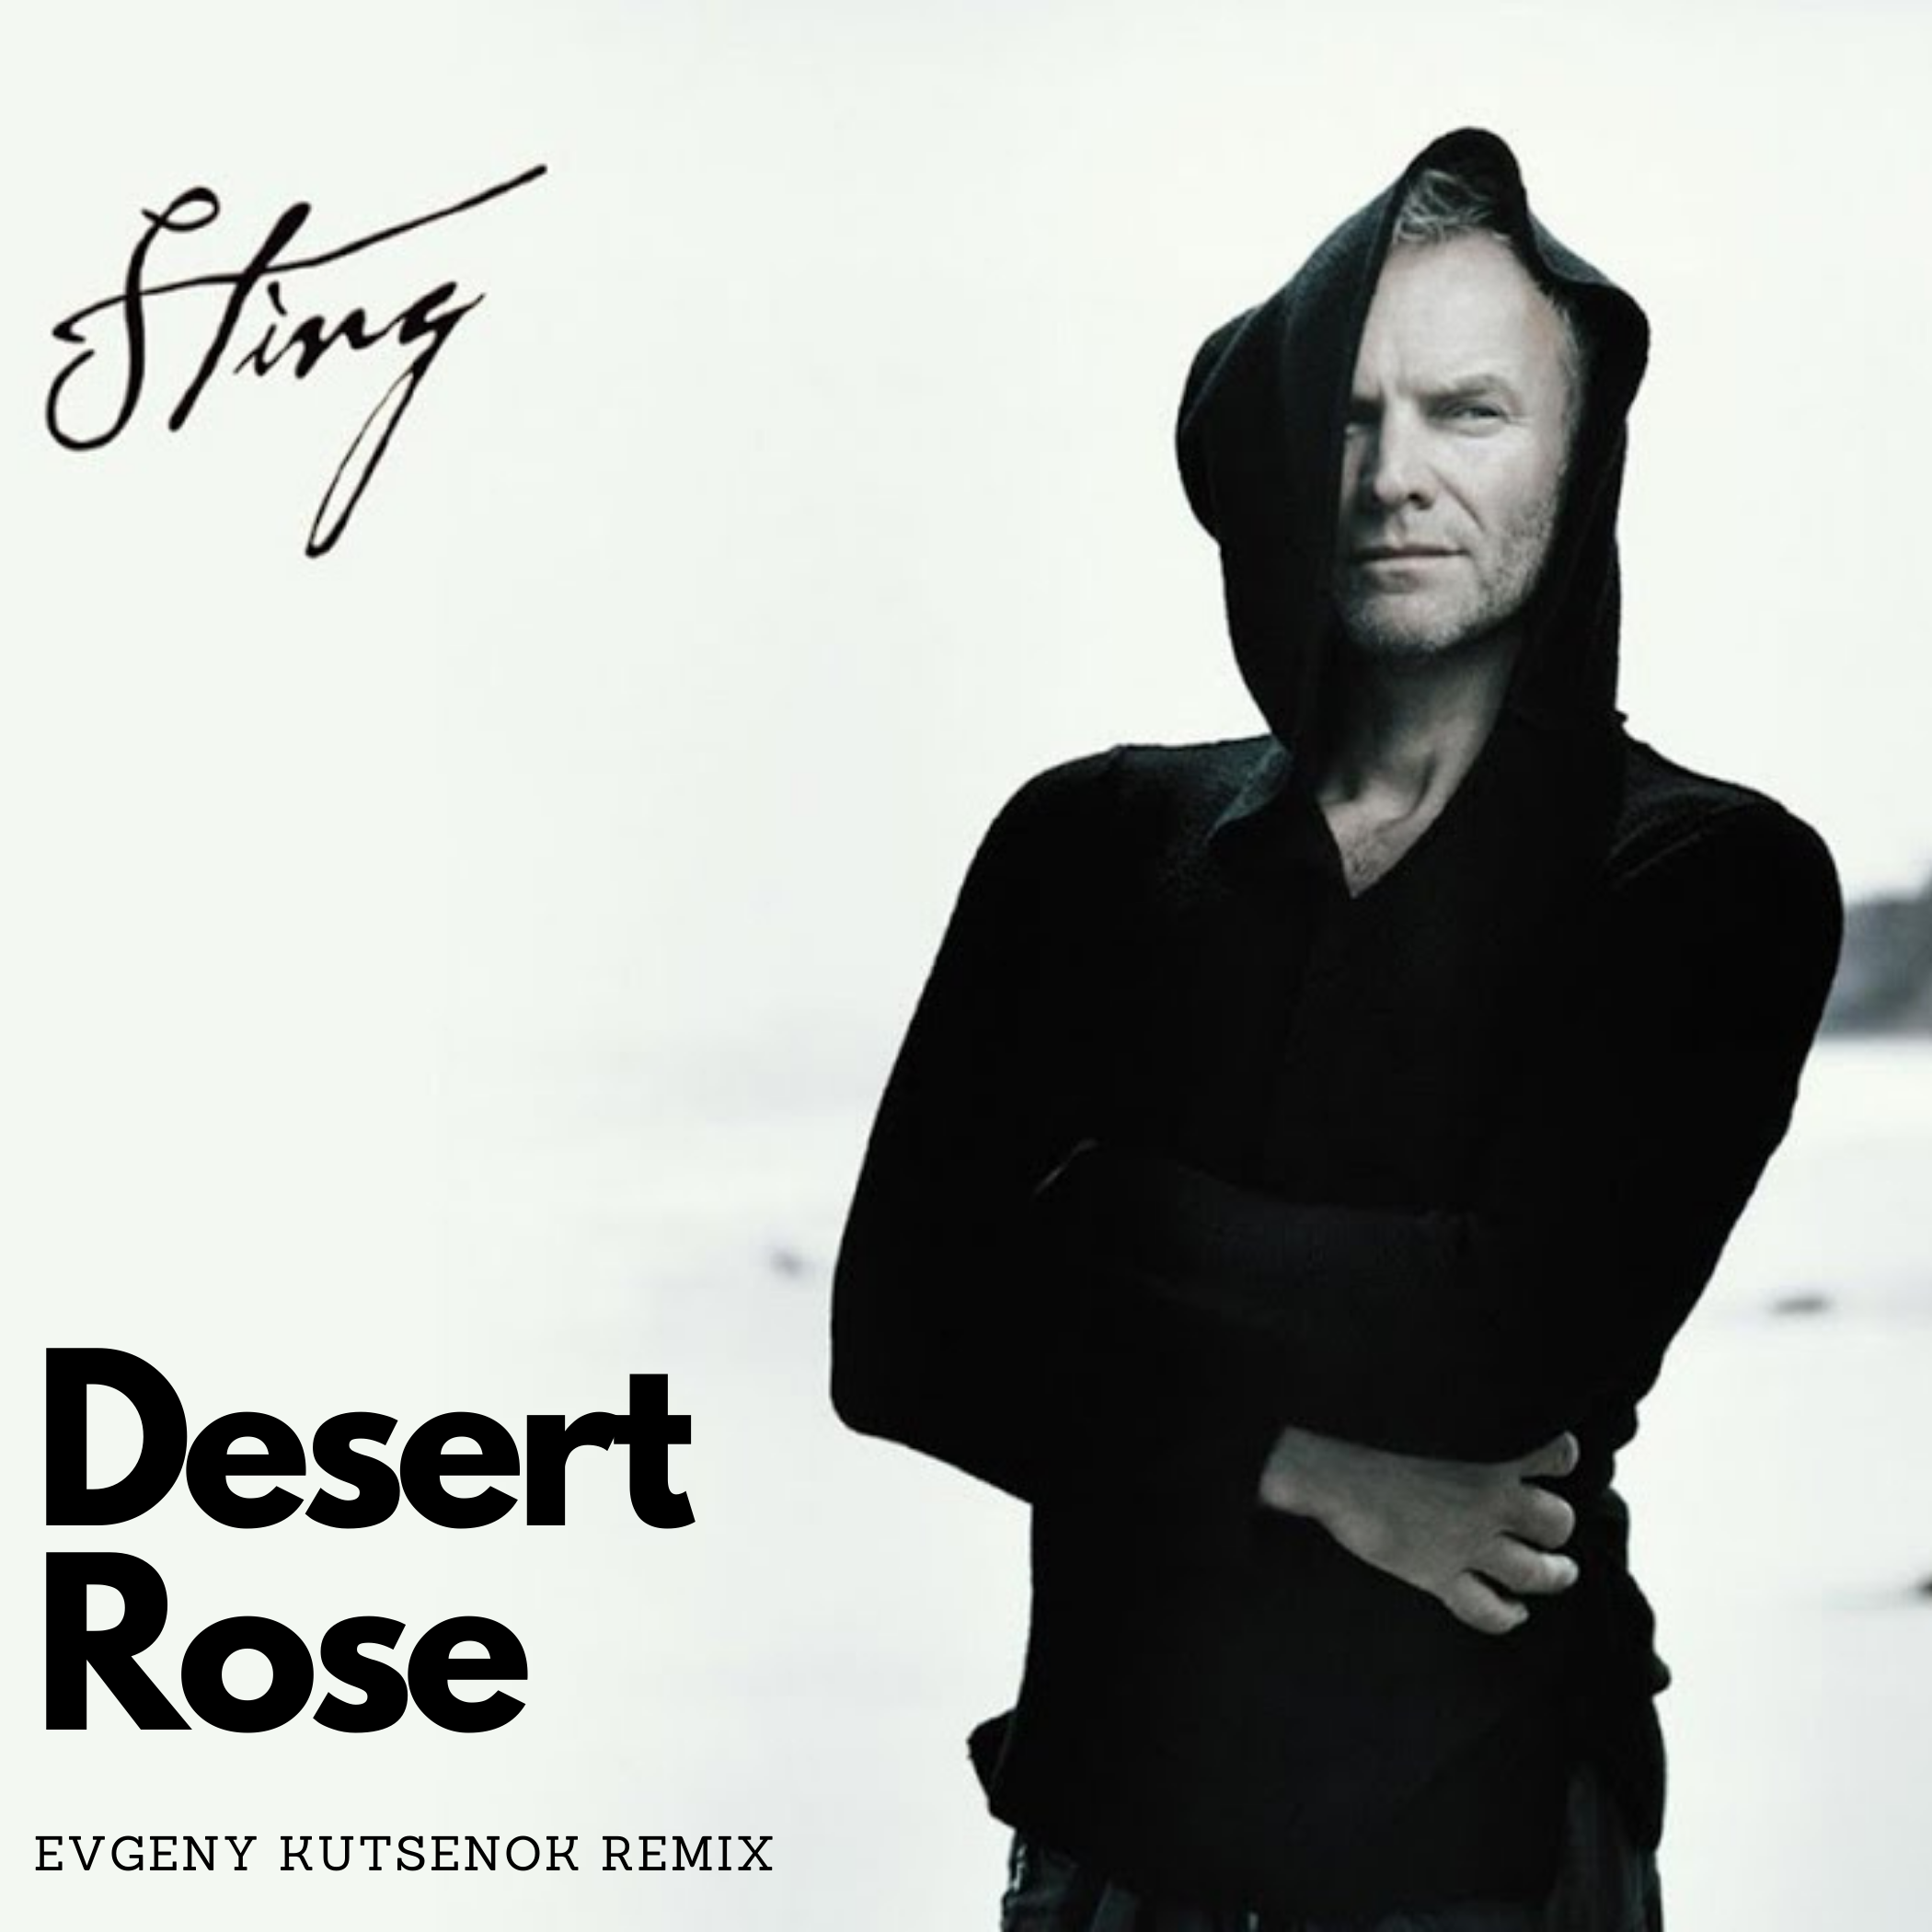 Desert rose